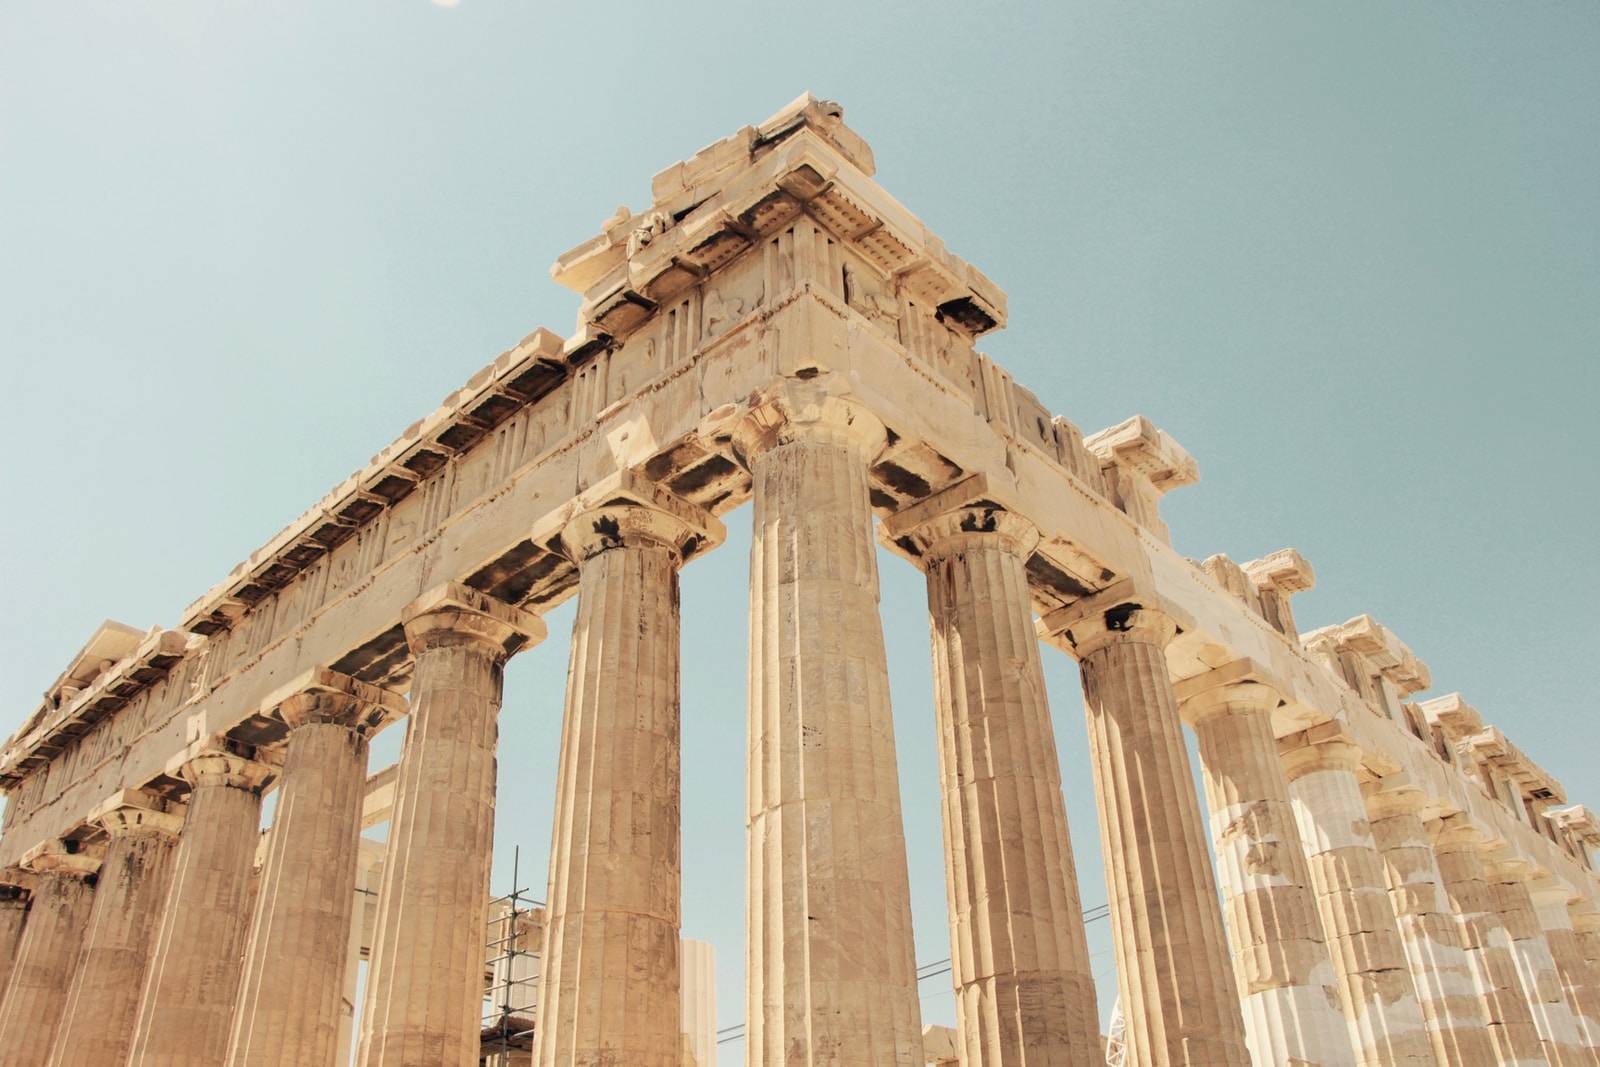 Értékek és értékrendek az antik görög irodalomban